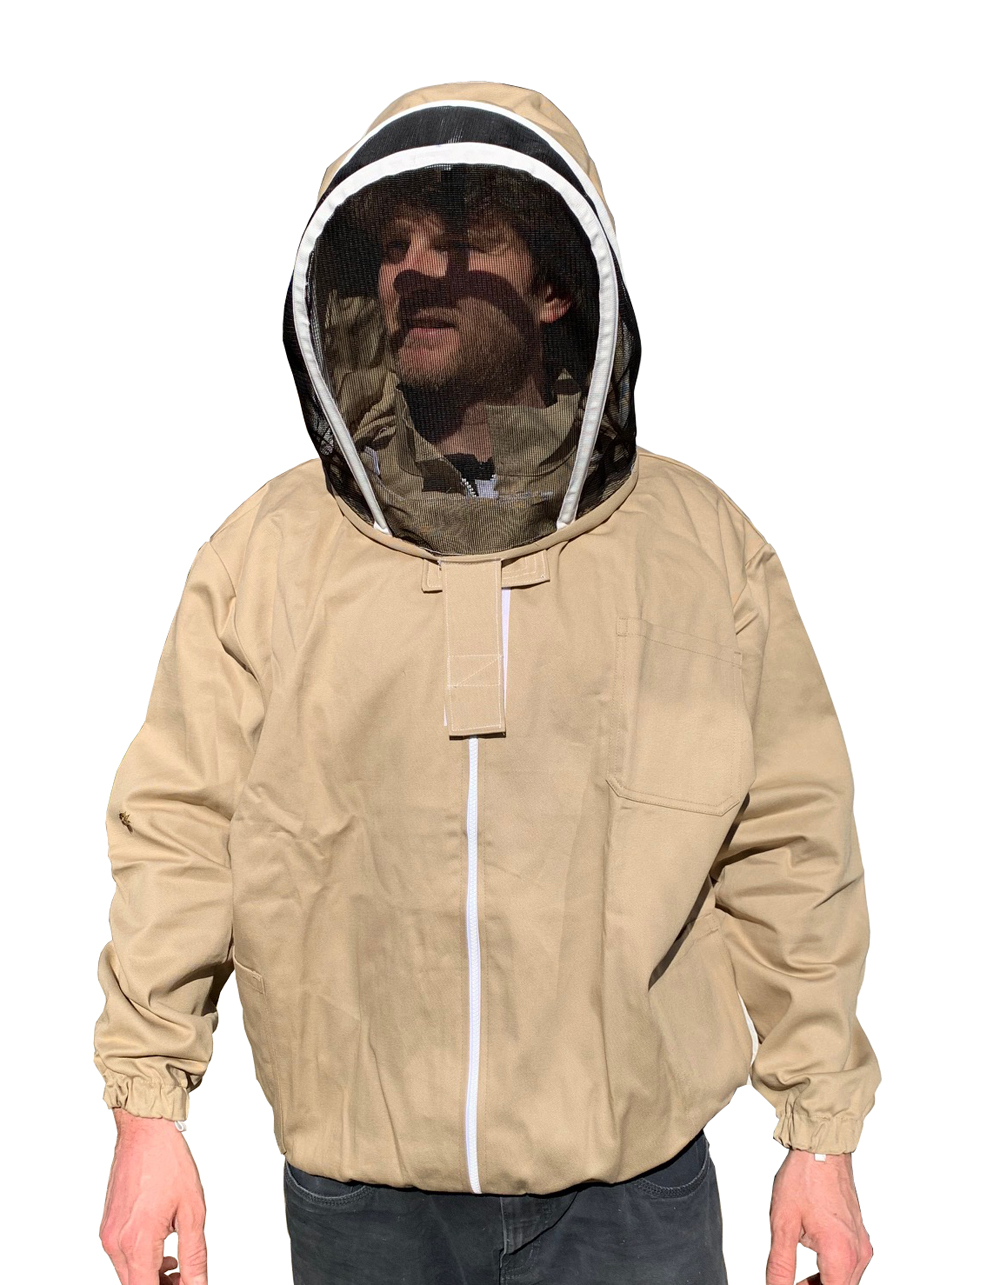 Imker Bienenschutz Jacke Mit Netzschleier Und Reißverschluss Vorne-Größe XS 